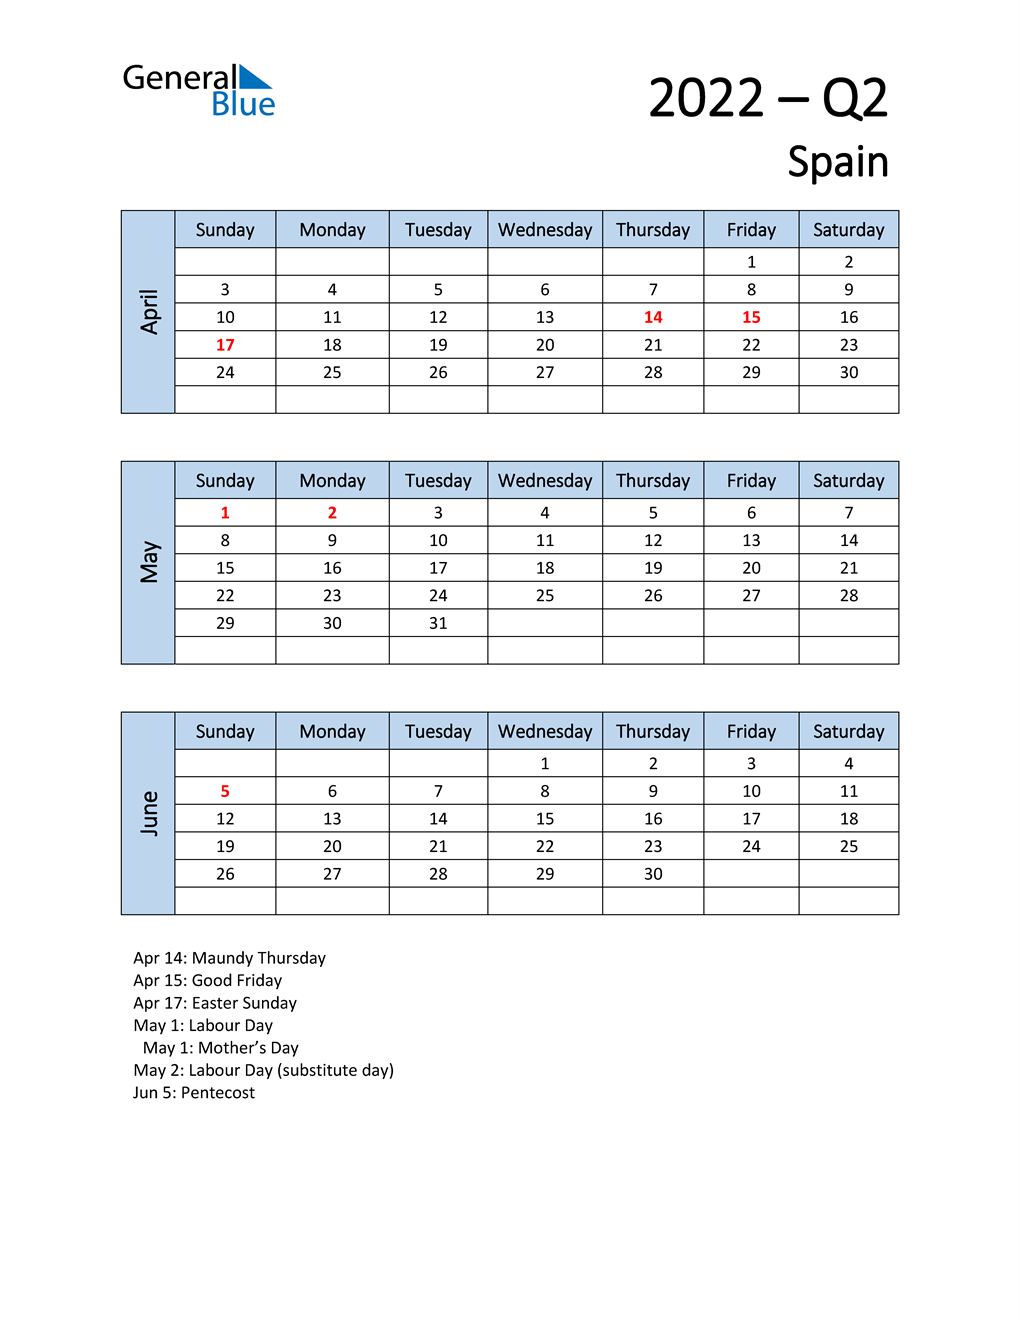  Free Q2 2022 Calendar for Spain